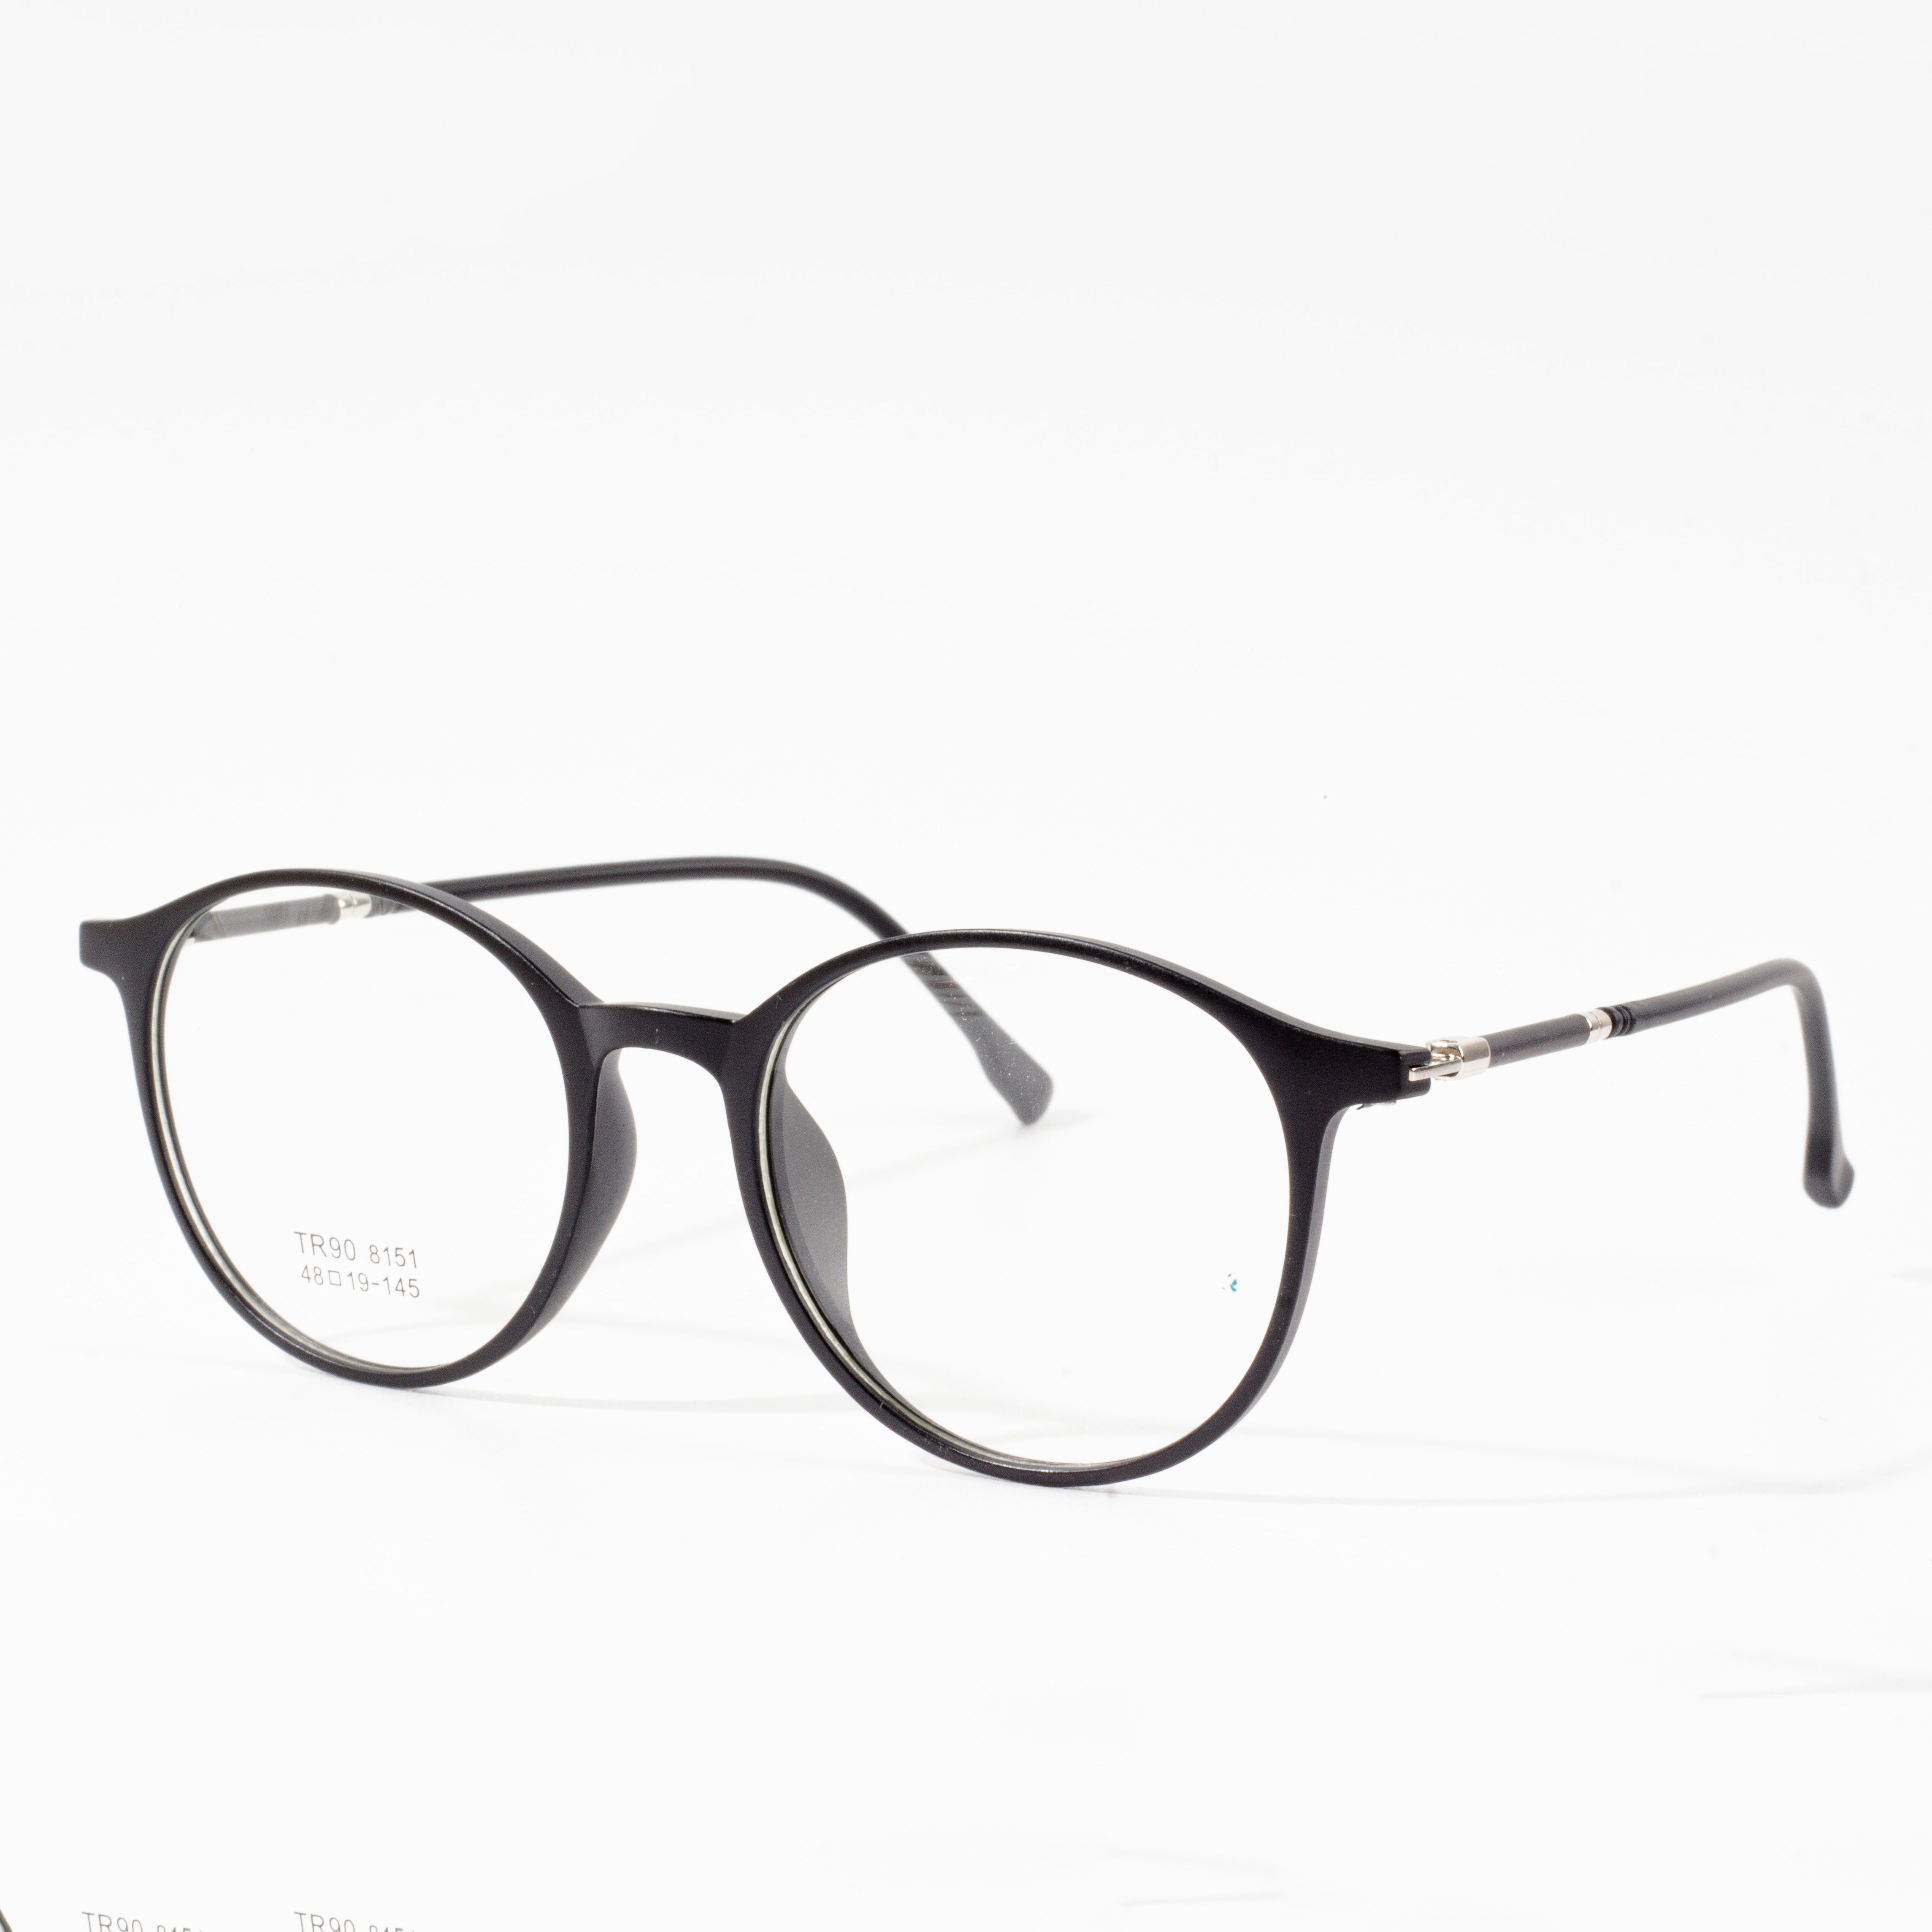 Montures de créateurs pour hommes et femmes - Eyeglasses.com 广告· https://www.eyeglasses.com/ (888) 896-3885 Achetez des montures de créateurs des meilleures marques mondiales de lunettes pour la moitié des prix de détail aujourd'hui.